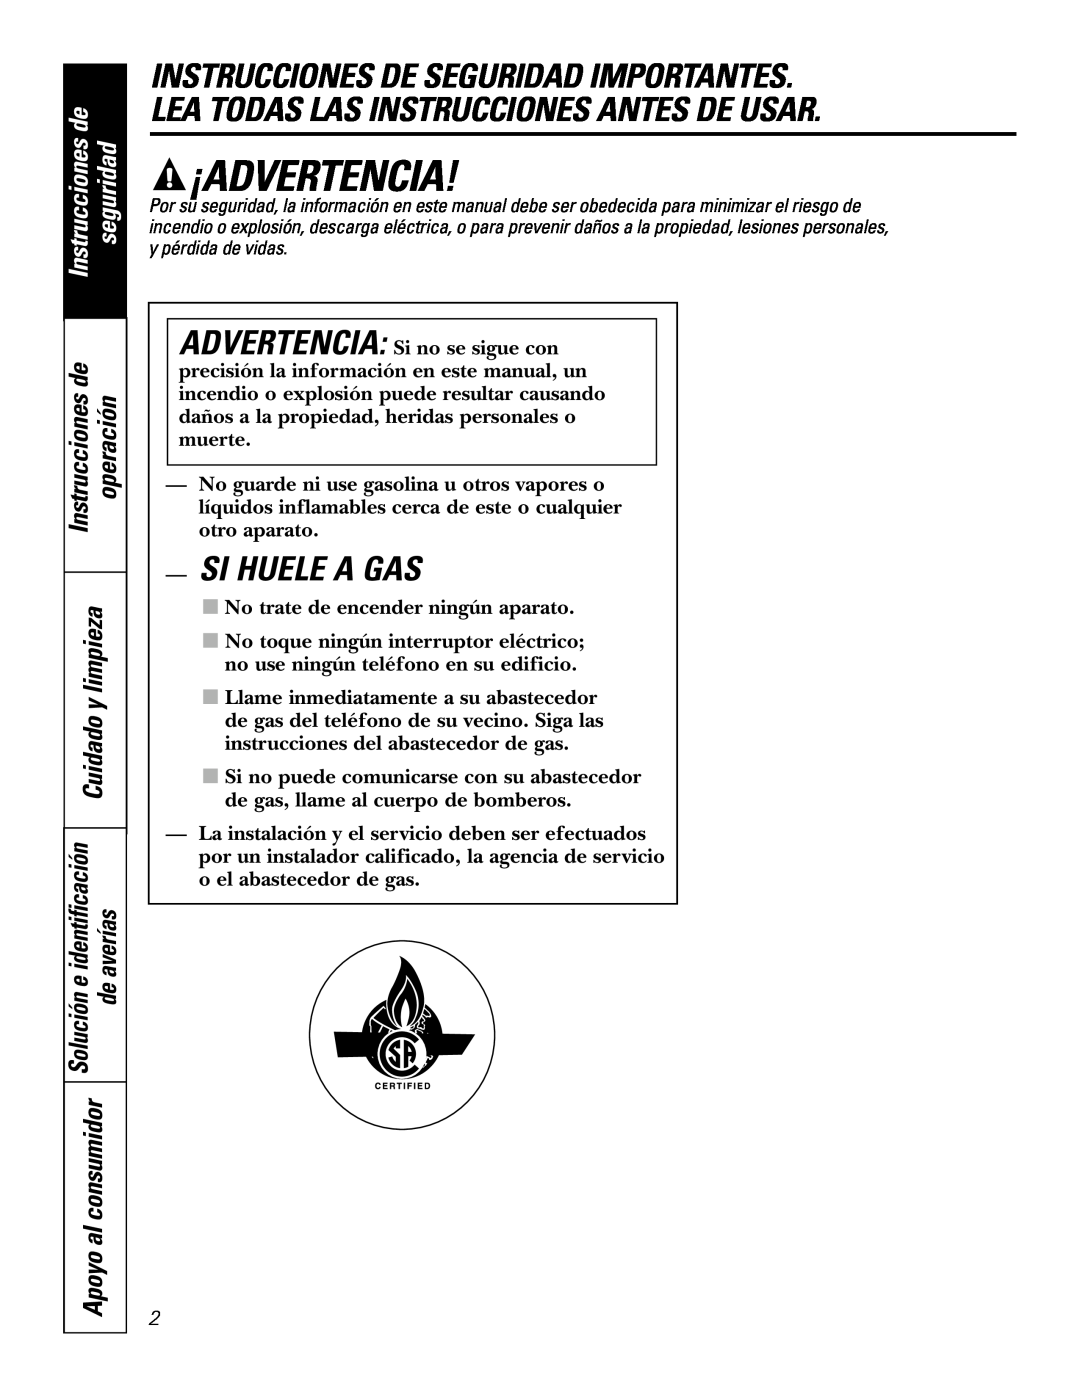 GE JGP989 manual ¡Advertencia, Si Huele A Gas, Instrucciones de, seguridad, operación 